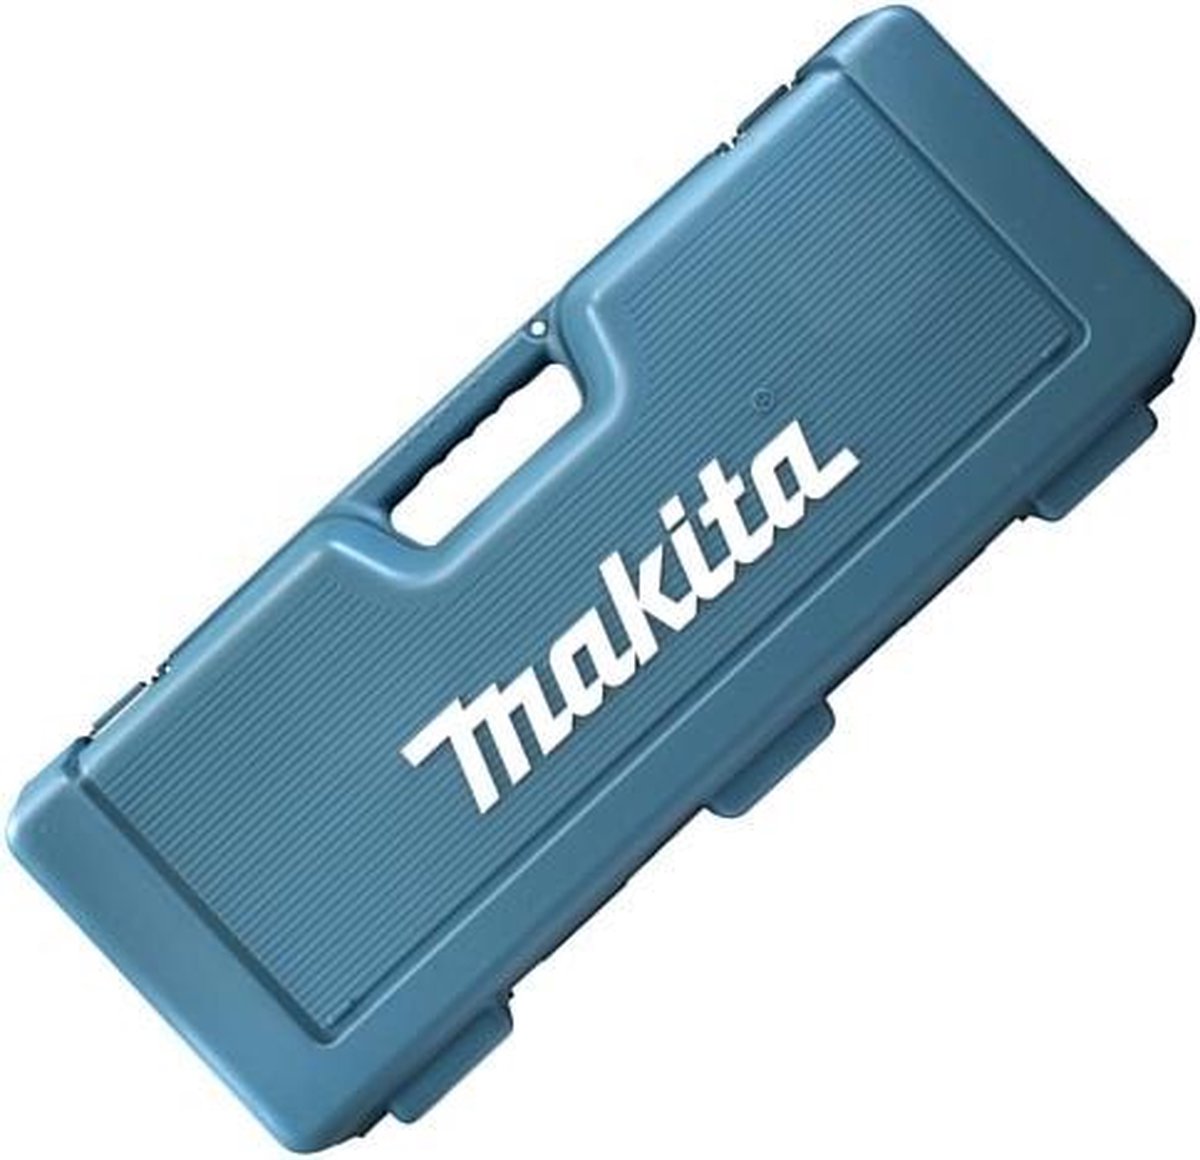 Makita 824760-8 gereedschapskoffer voor DJR181 / DJR141 / DJR182